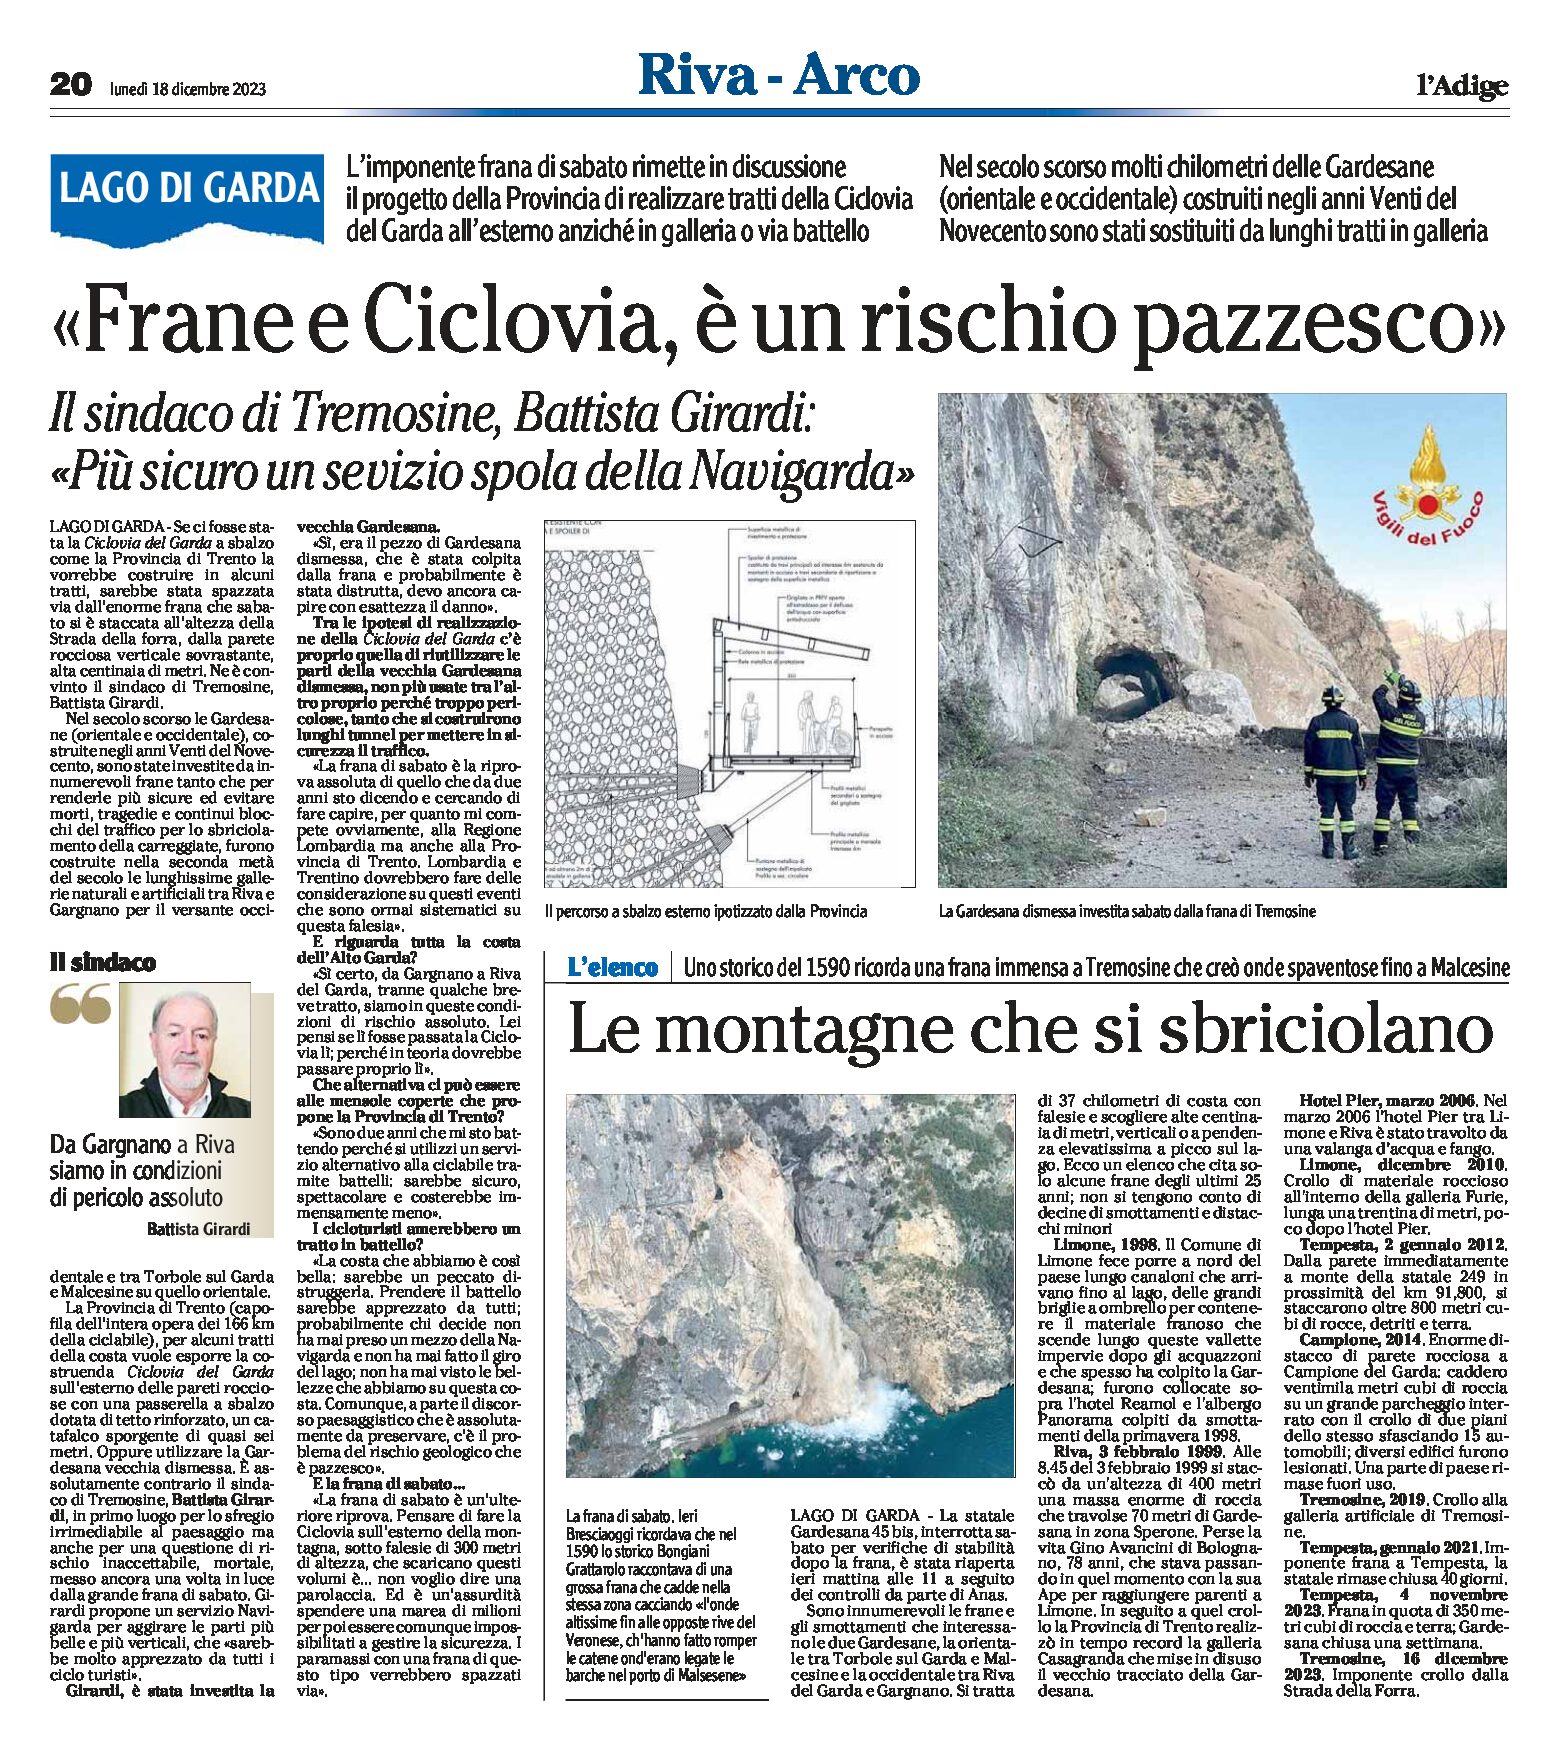 Lago di Garda: il sindaco di Tremosine Girardi “frane e ciclovia, è un rischio pazzesco”